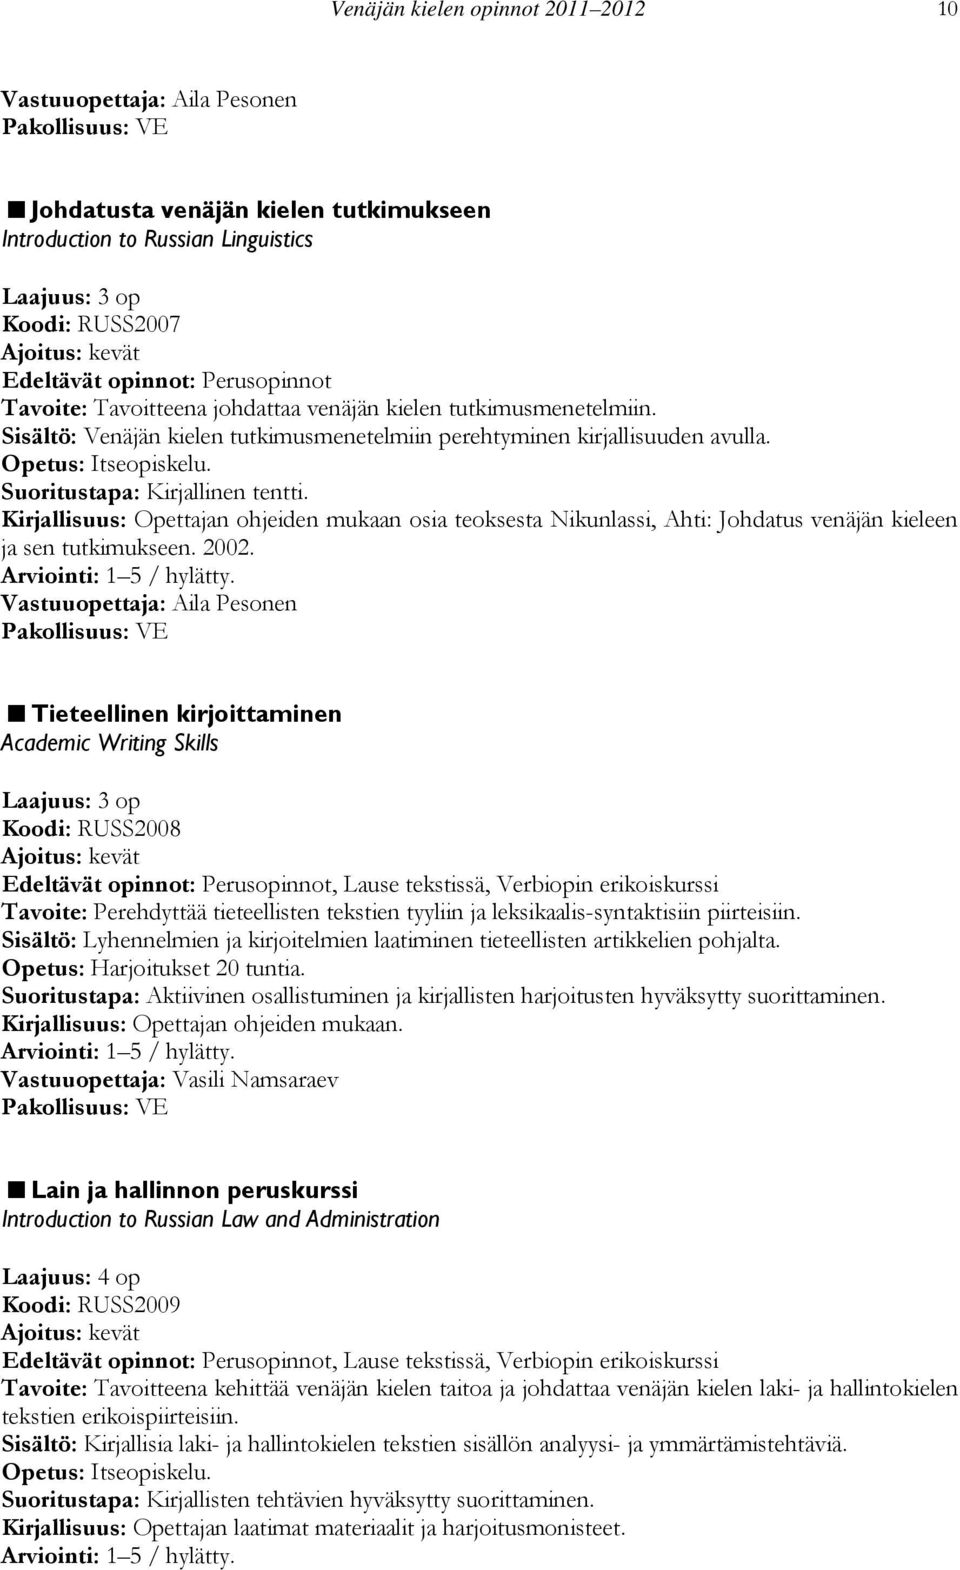 Kirjallisuus: Opettajan ohjeiden mukaan osia teoksesta Nikunlassi, Ahti: Johdatus venäjän kieleen ja sen tutkimukseen. 2002.